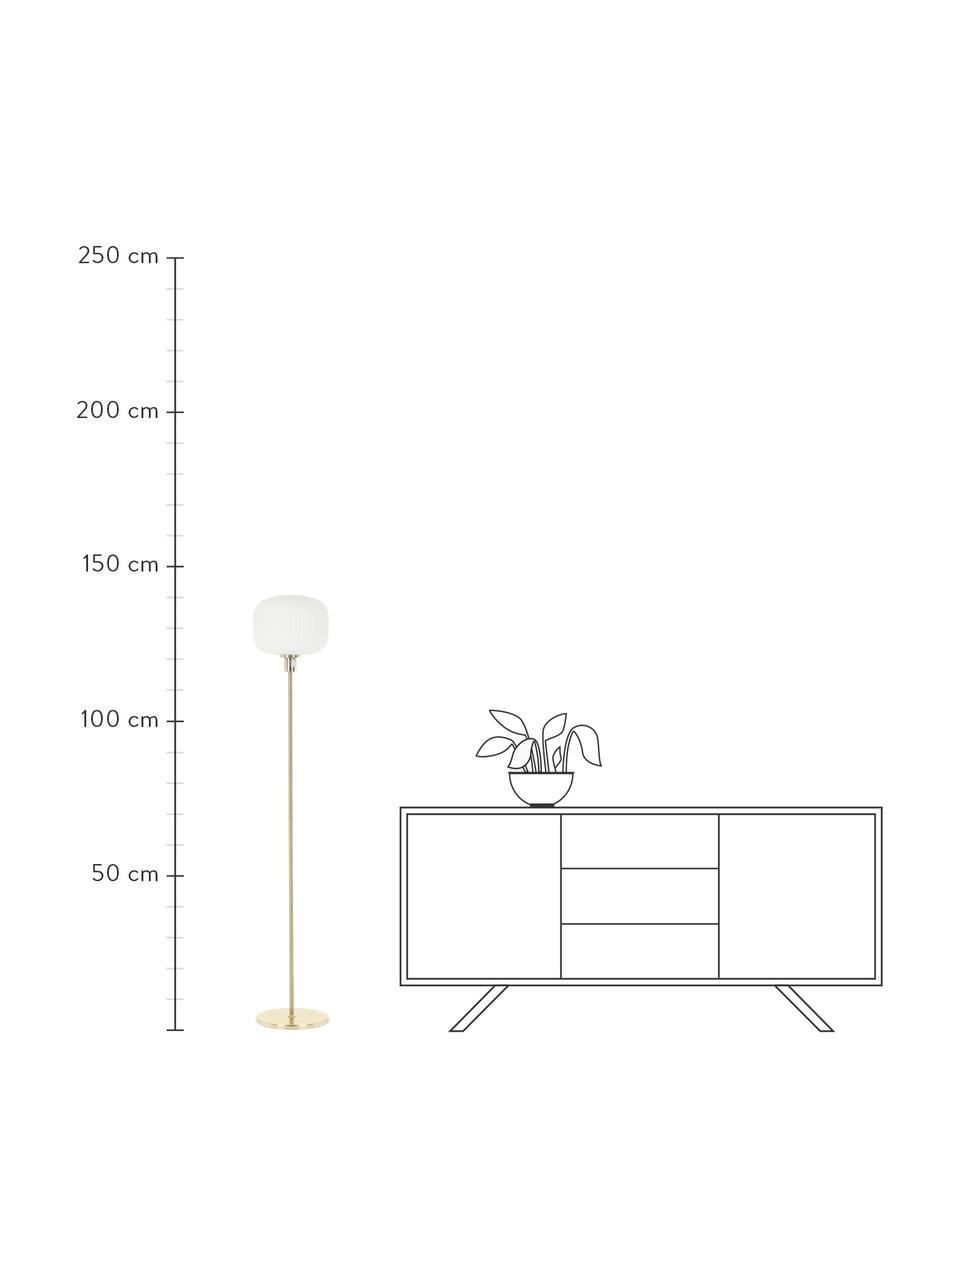 Stehlampe Sober mit Glasschirm, Lampenschirm: Opalglas, Lampenfuß: Metall, gebürstet, Weiß, Goldfarben, Ø 25 x H 141 cm